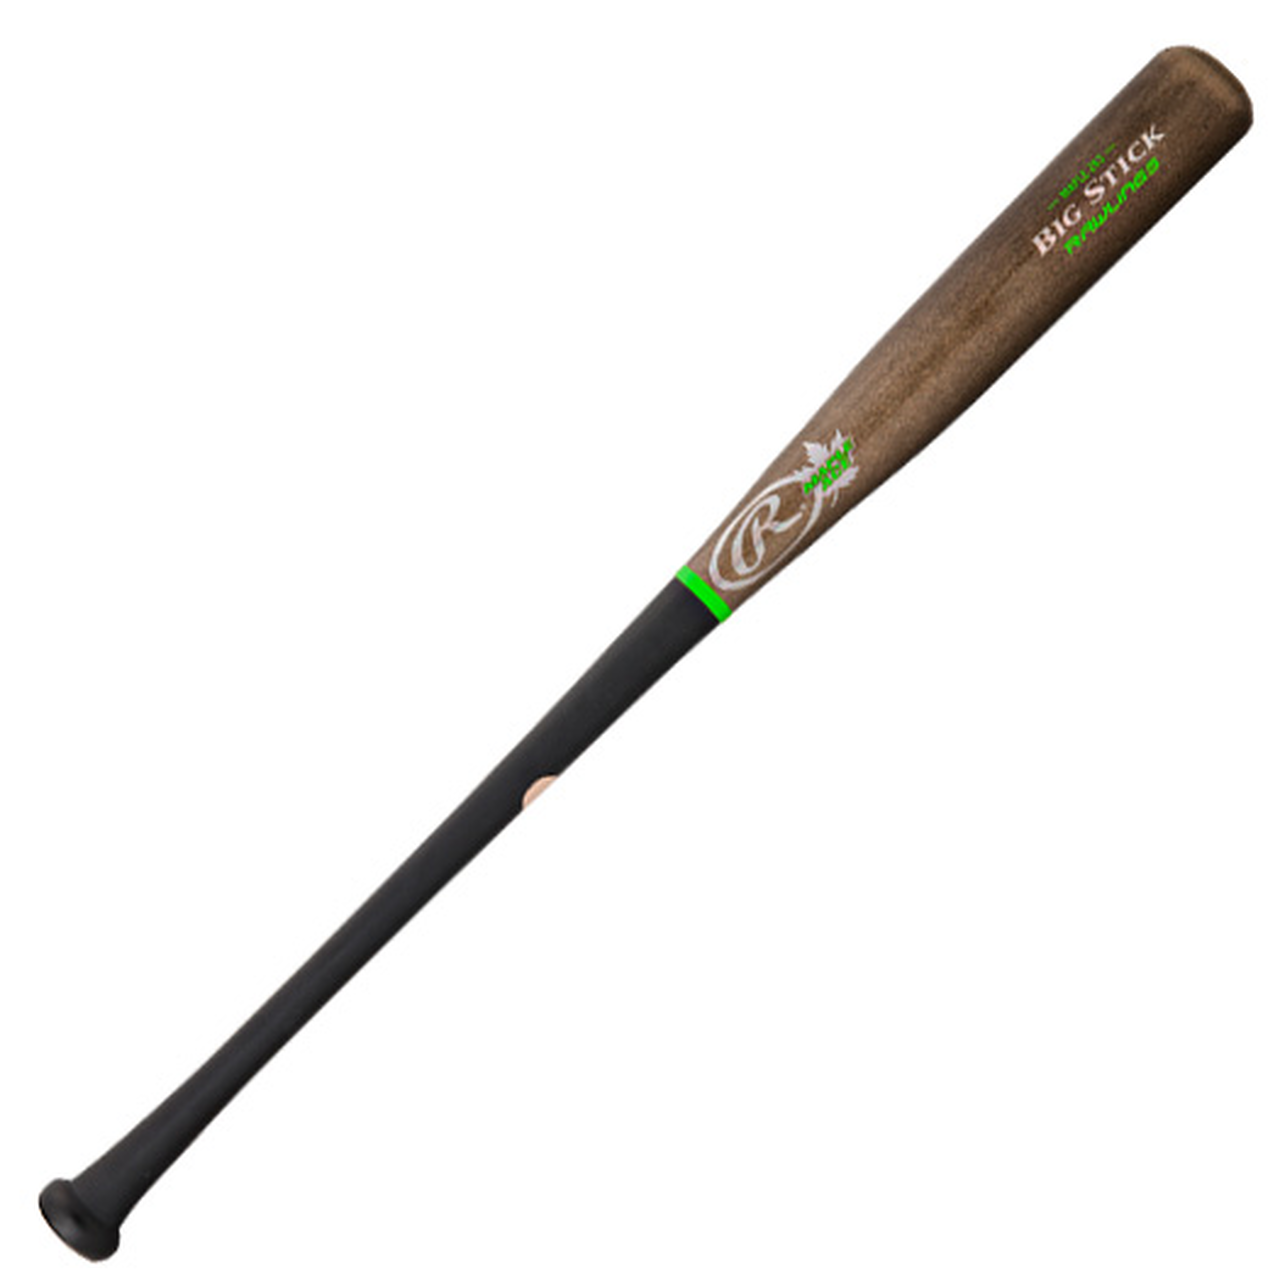 Rawlings Big Stick Maple Ace 243 Baseball Bat.